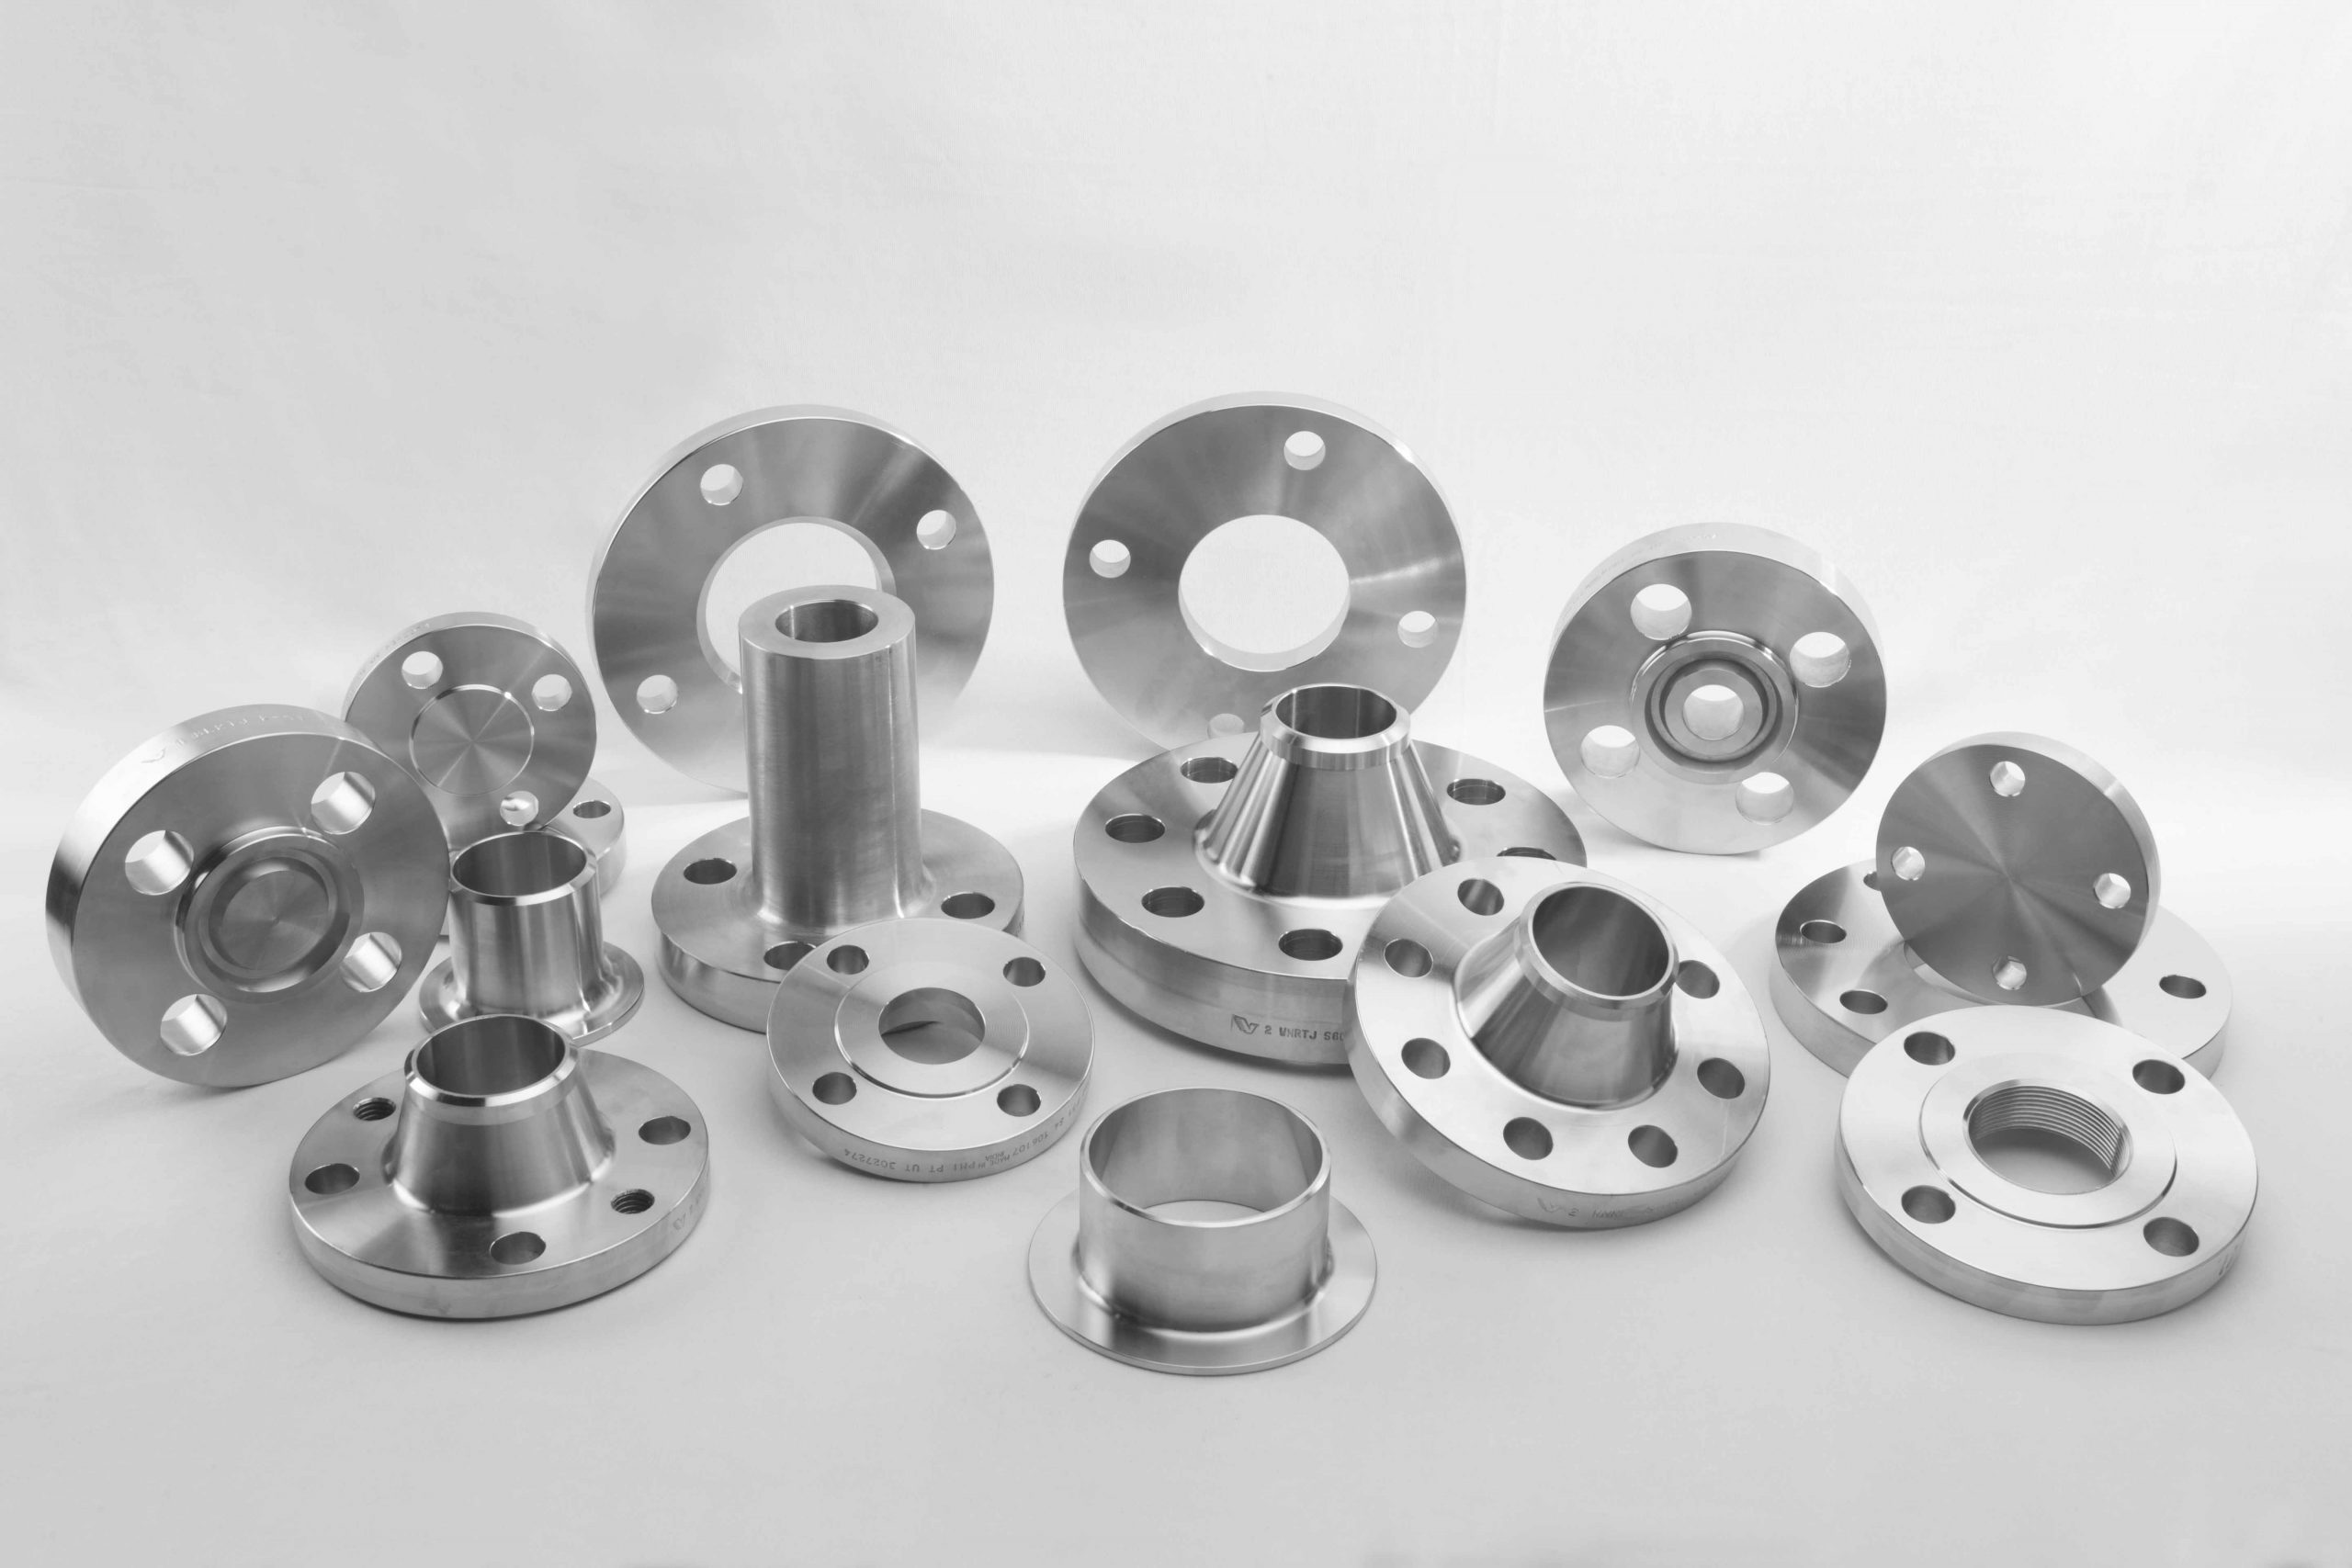  inconel steel flange manufacturer supplier distributors